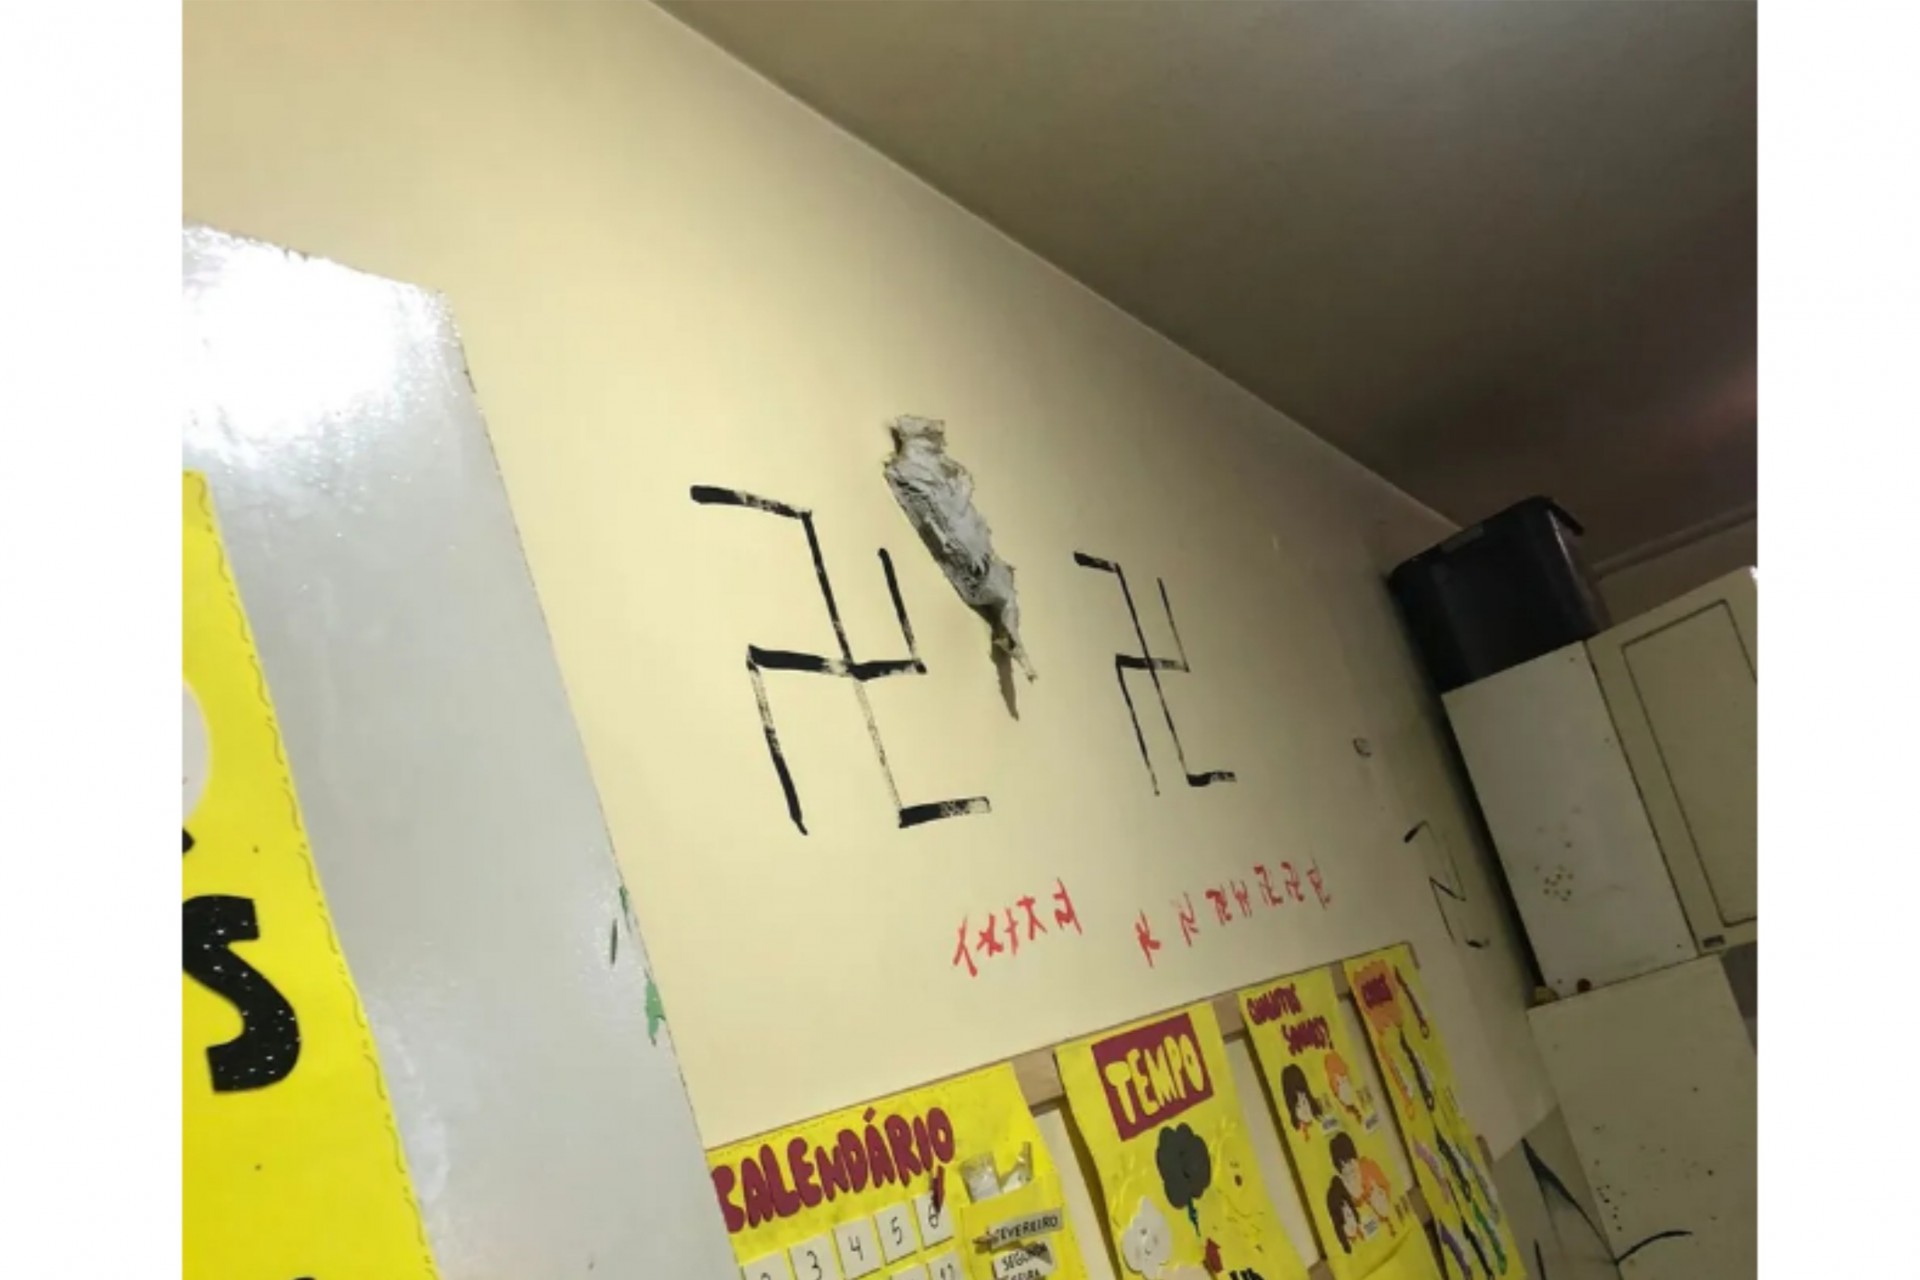 Paraná: Vândalos invadem creche e desenham símbolos nazistas nas paredes, diz PM